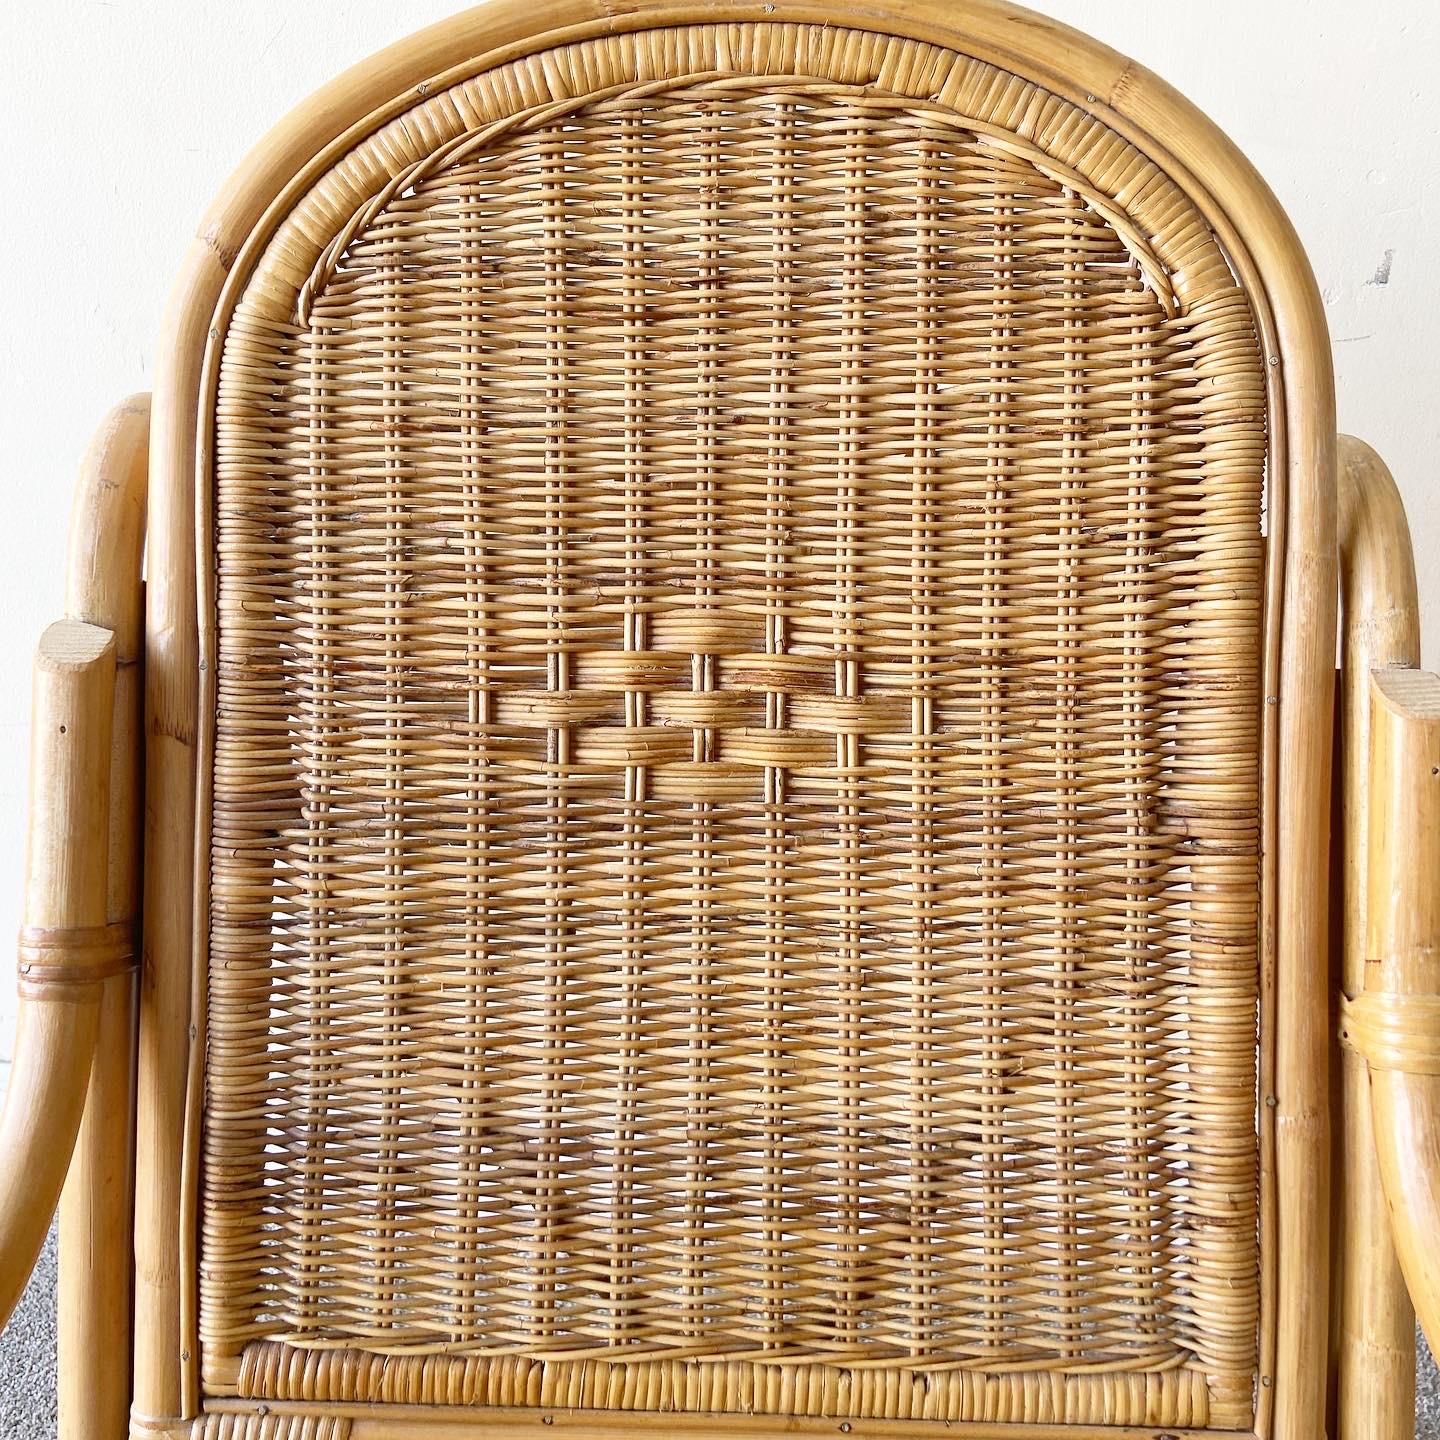 Bohemian Boho Chic Bamboo Wicker Rattan Rocking Chair